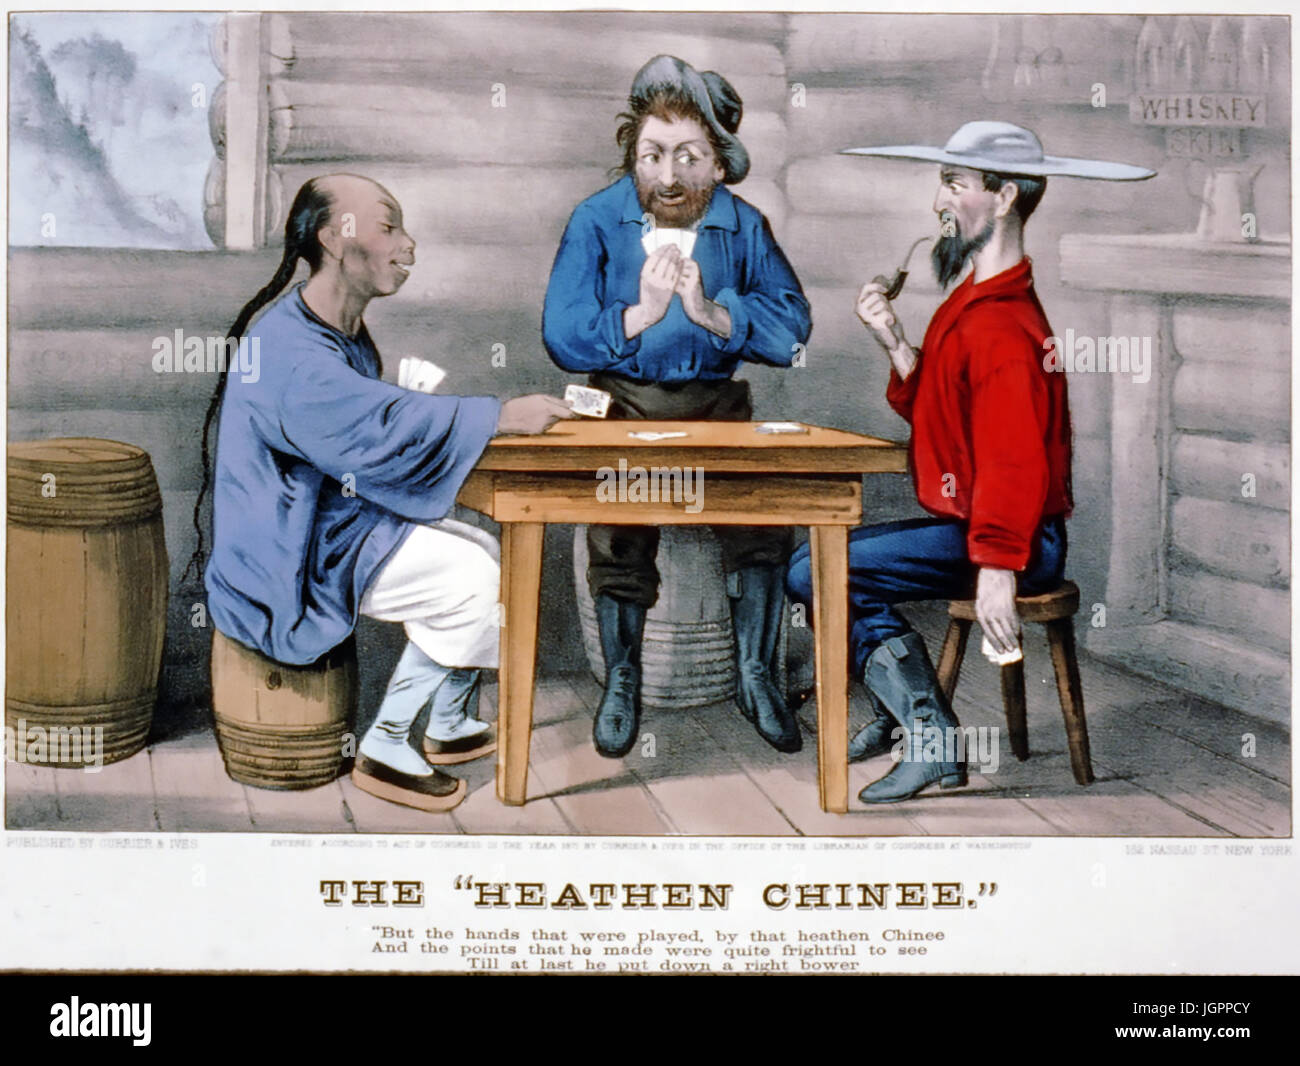 Il " nazioni " CHINEE Currier & Ives Stampa circa 1870 basato su una poesia da Bret Harte rendendo il divertimento di anti-sentimento cinesi in California Foto Stock